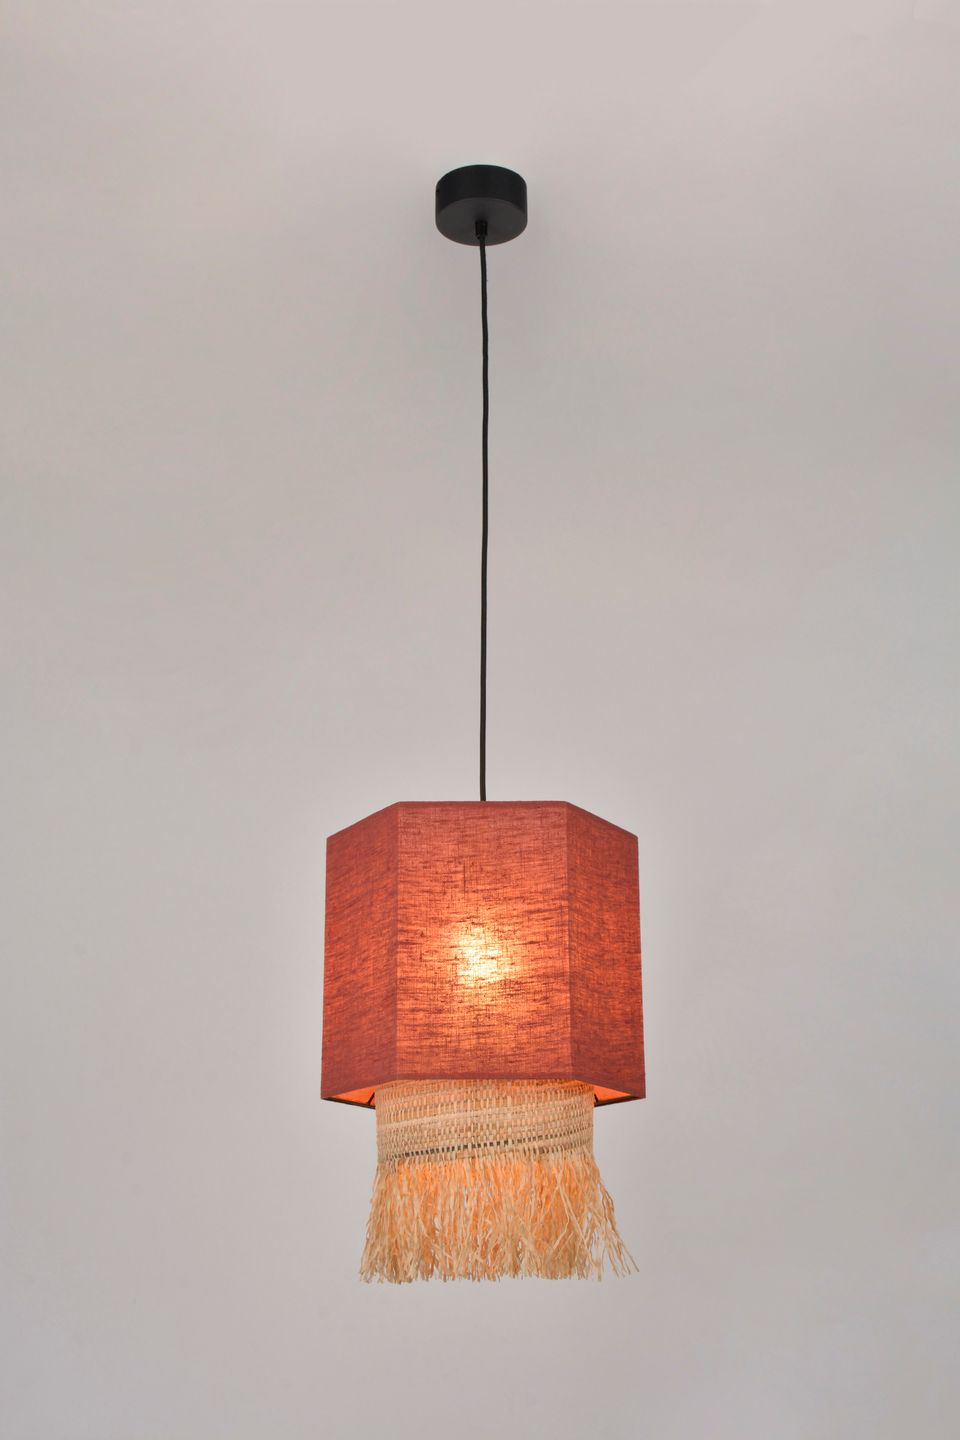 MARRAKECH S by Market Set Pendant Lamp